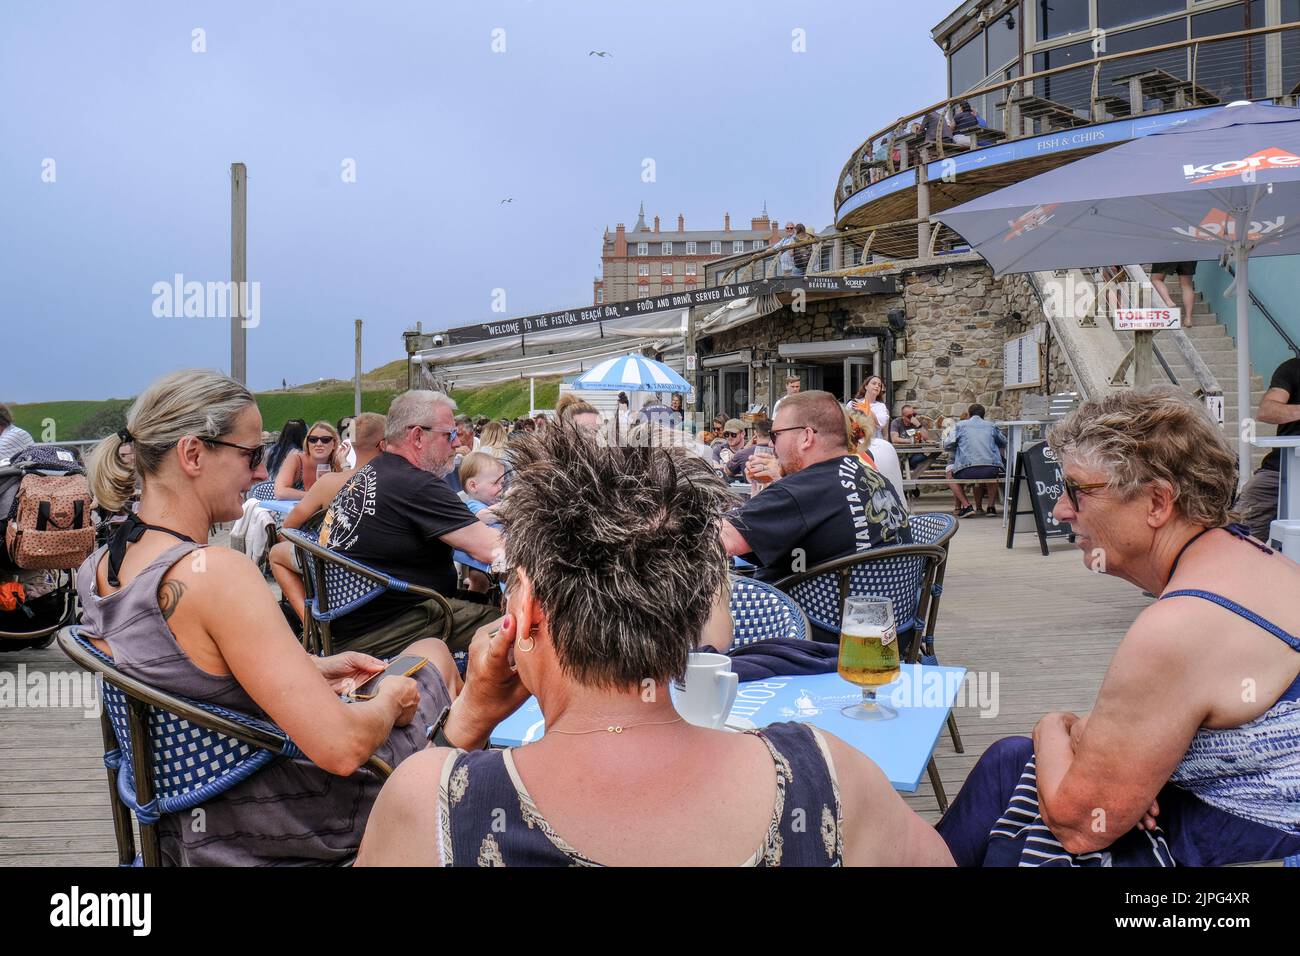 En uno de los días más calurosos del año, los turistas del Reino Unido se relajan en la zona de terrazas del Fistral Beach Bar en Newquay, en la costa de Cornwall. Foto de stock